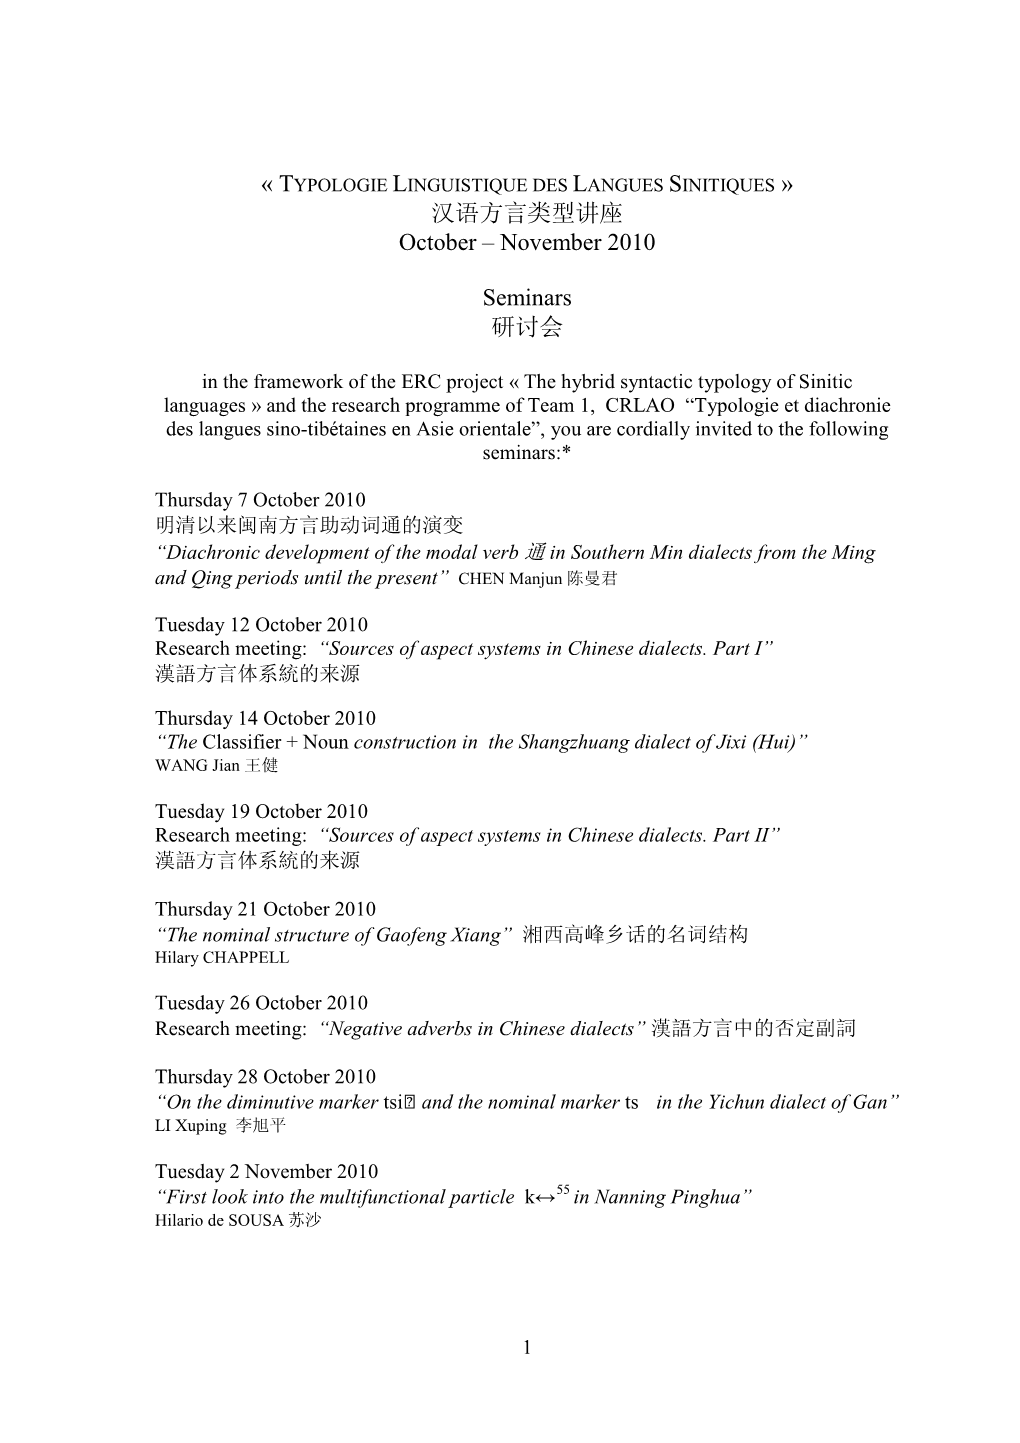 Nov 2010 Timetable[1]